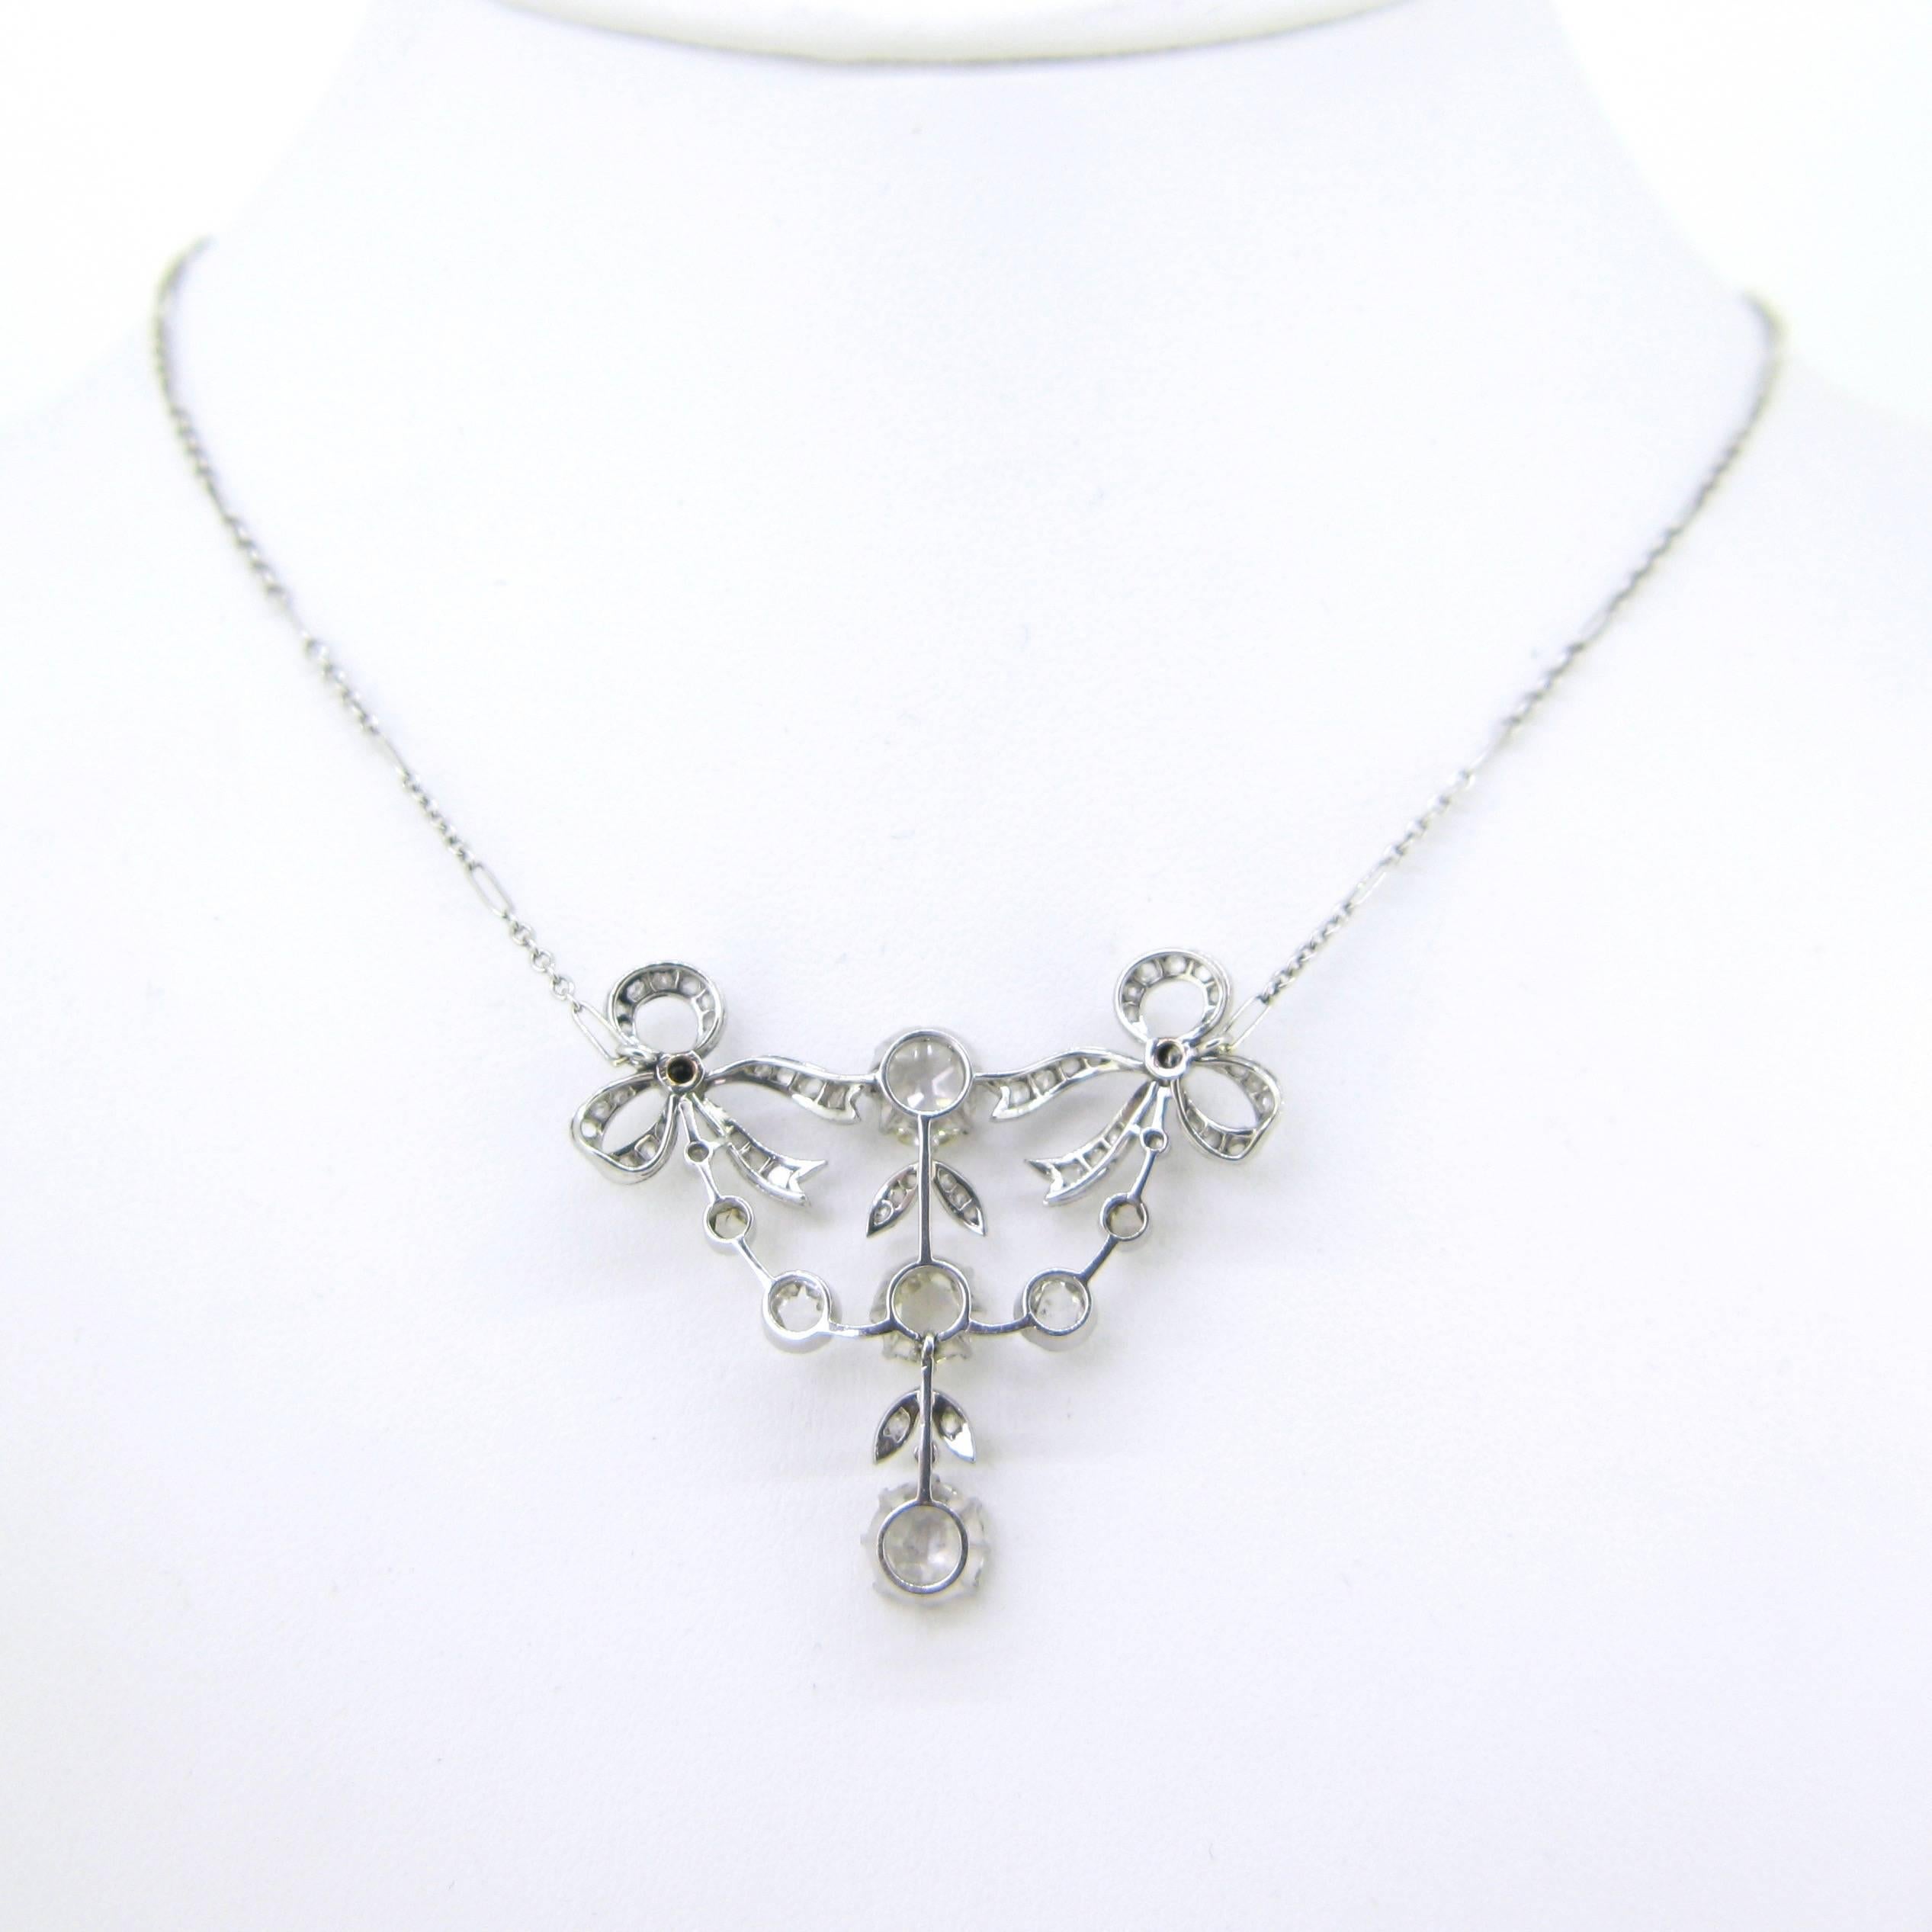 Women's or Men's Edwardian Belle Epoque Rose Cut Diamonds Pendant Necklace